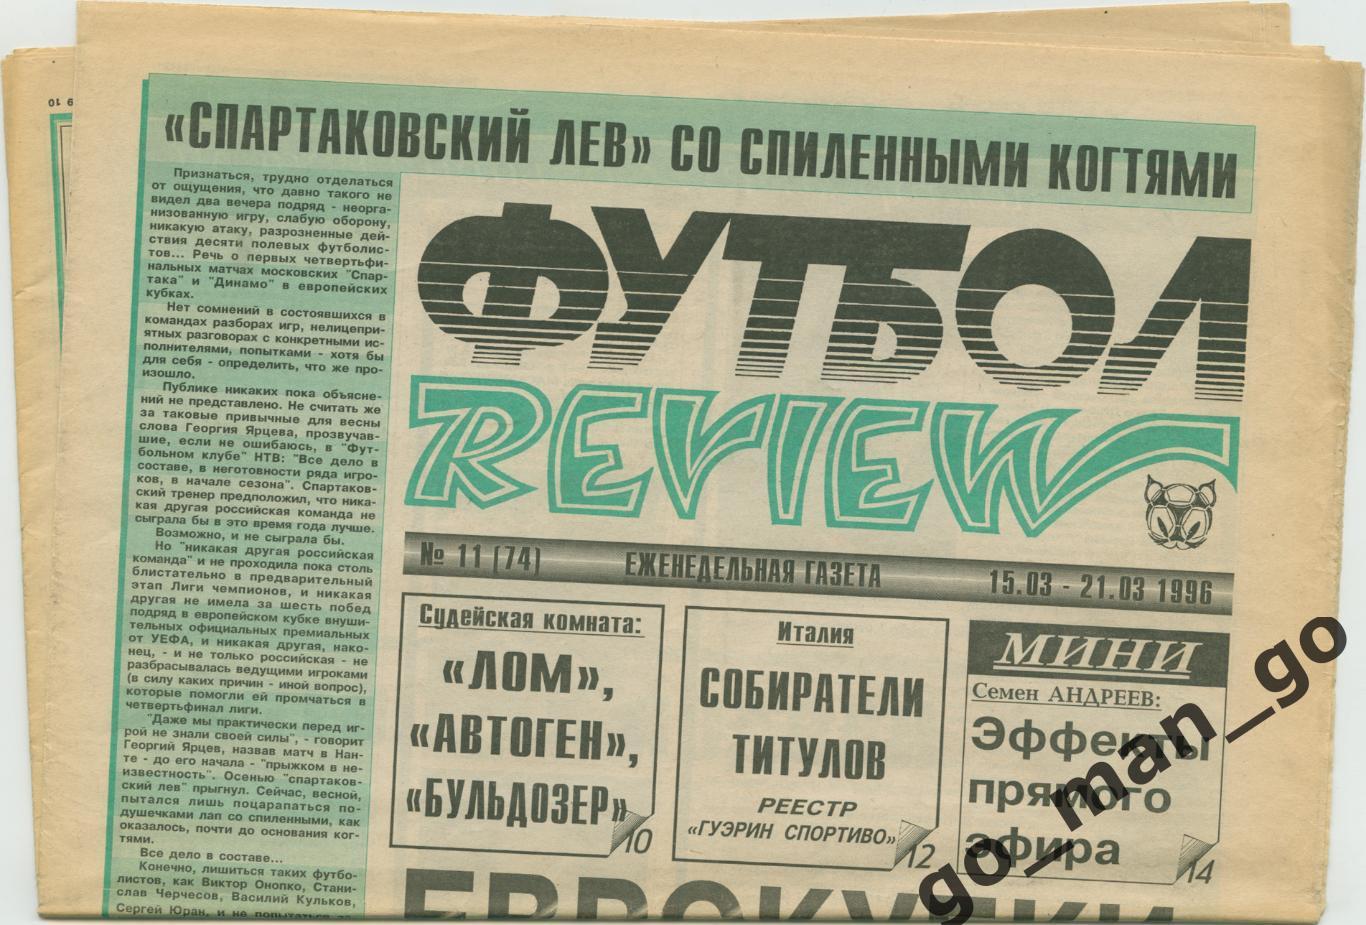 Еженедельник Футбол-Review (Футбол-Ревю), 15-21.03.1996, № 11.